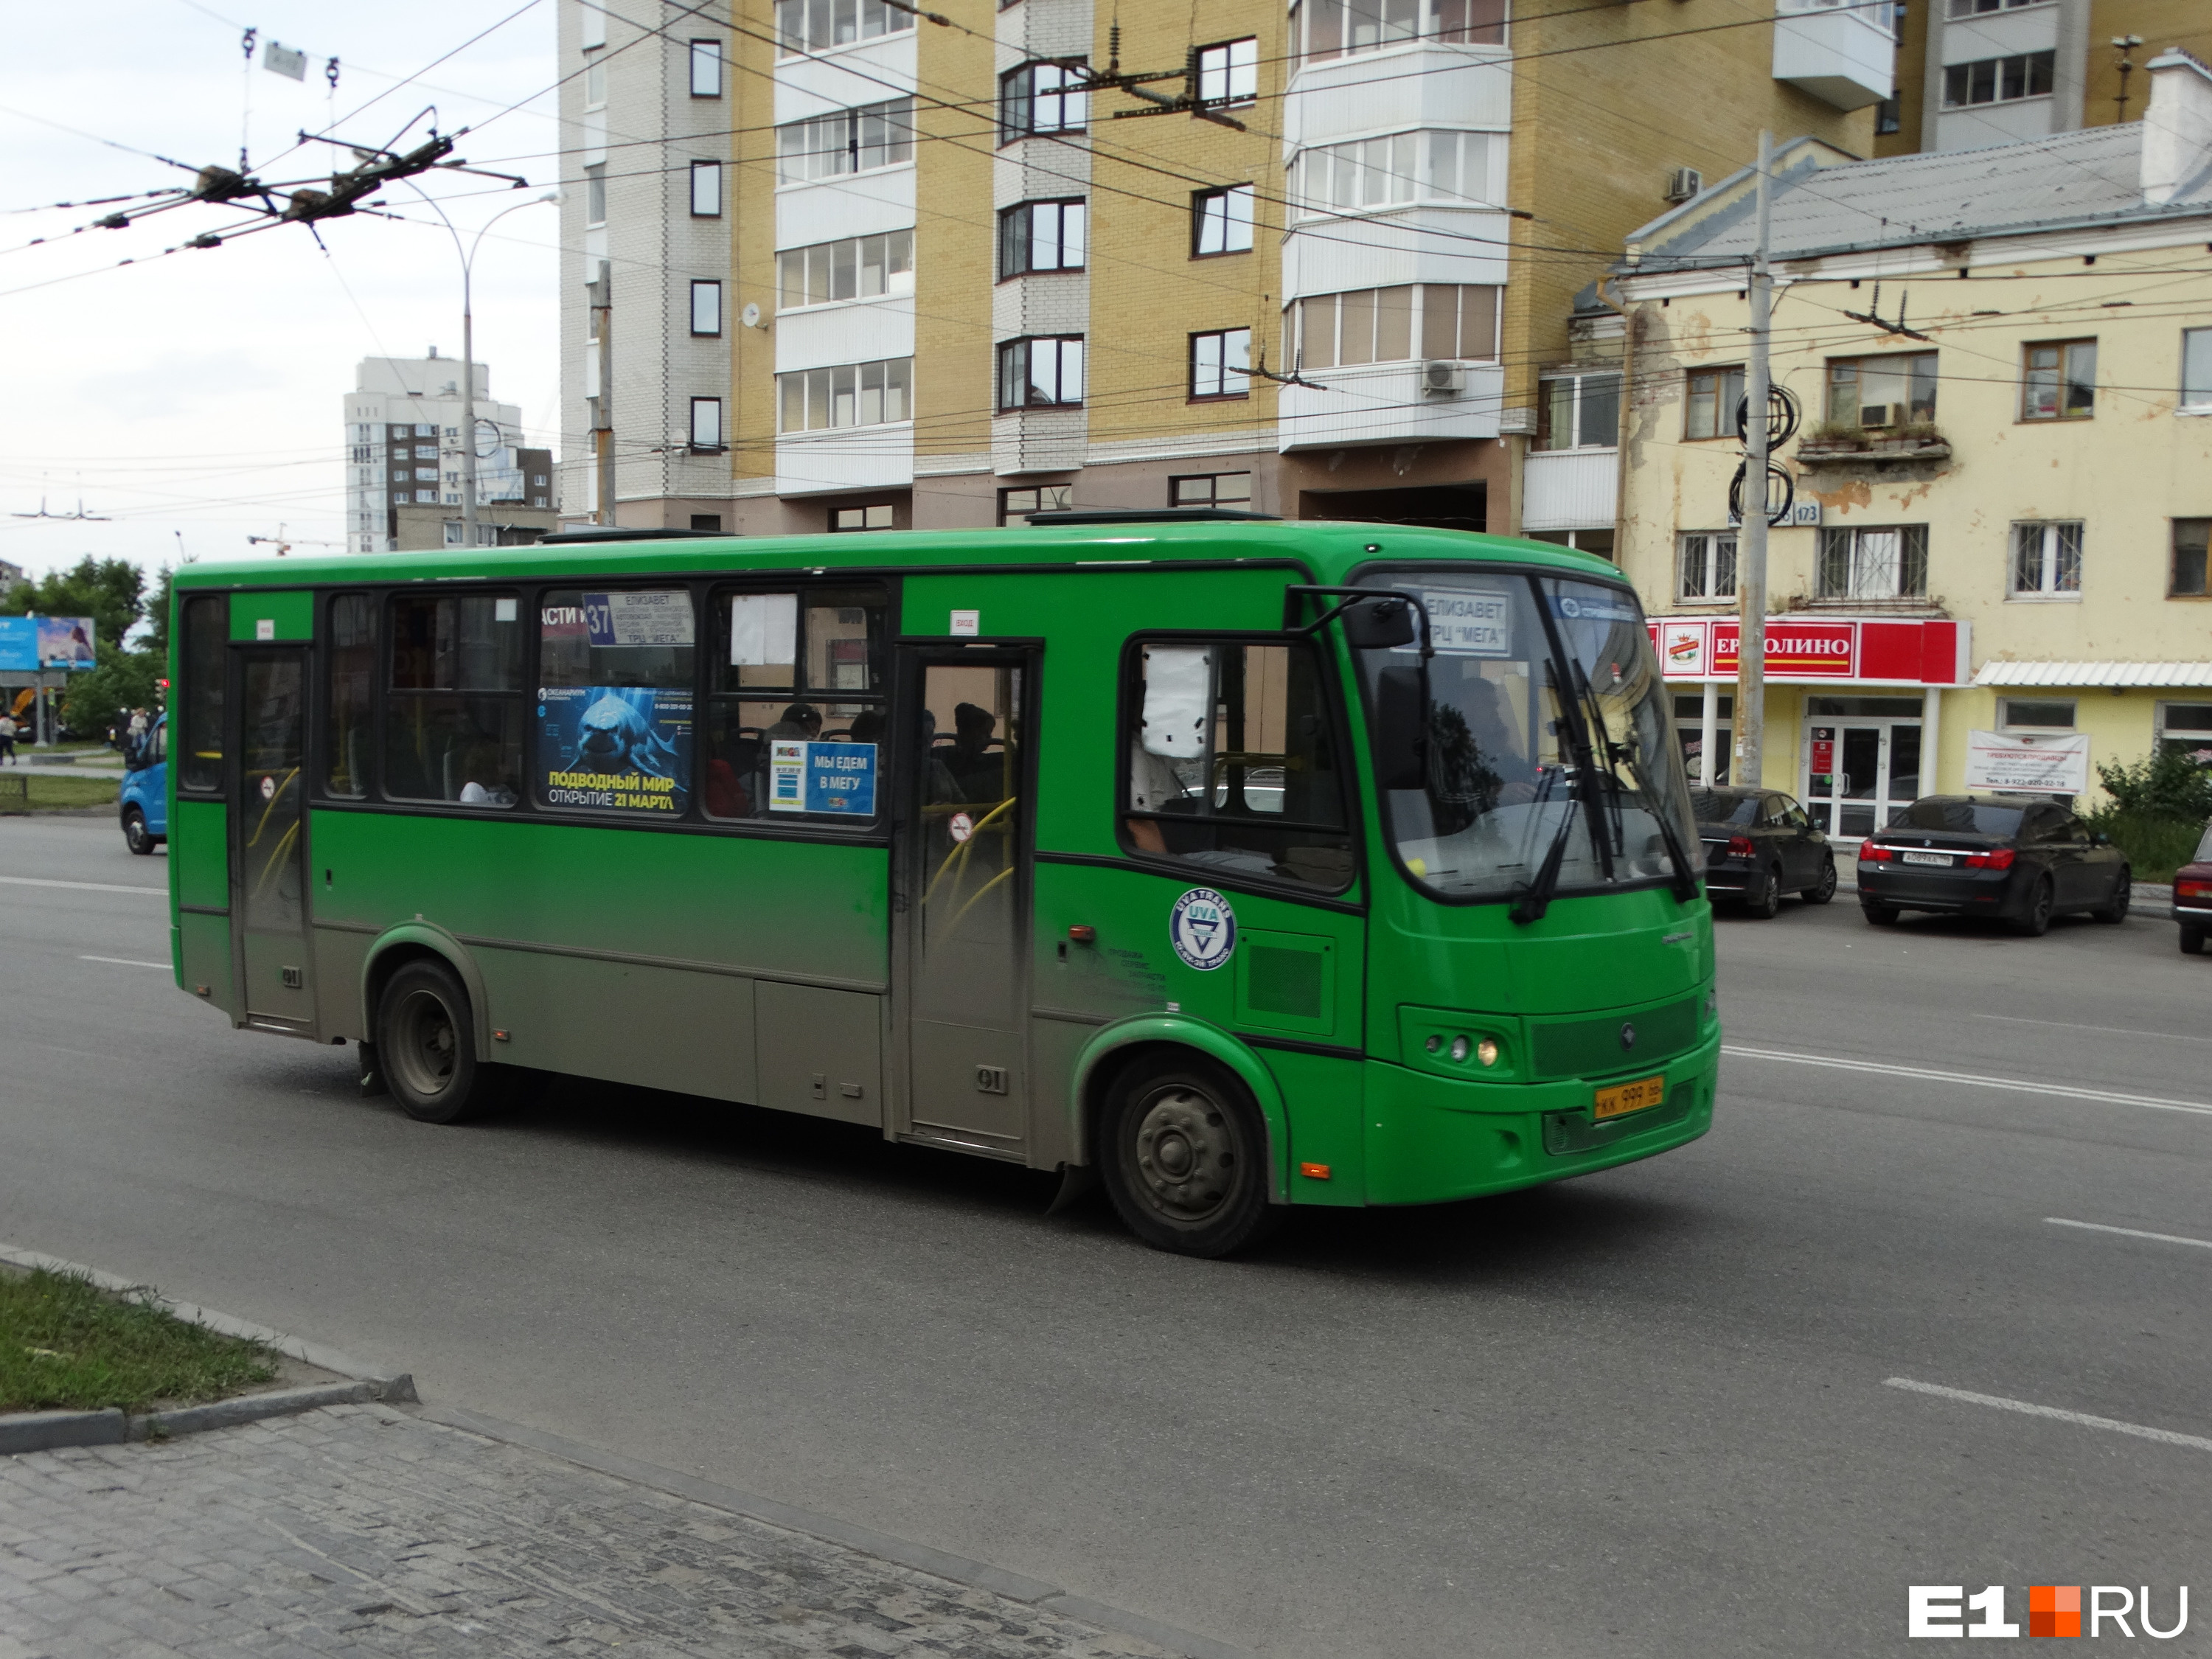 Автобусы с логотипами UVA ездили по Екатеринбургу два с лишним десятка лет